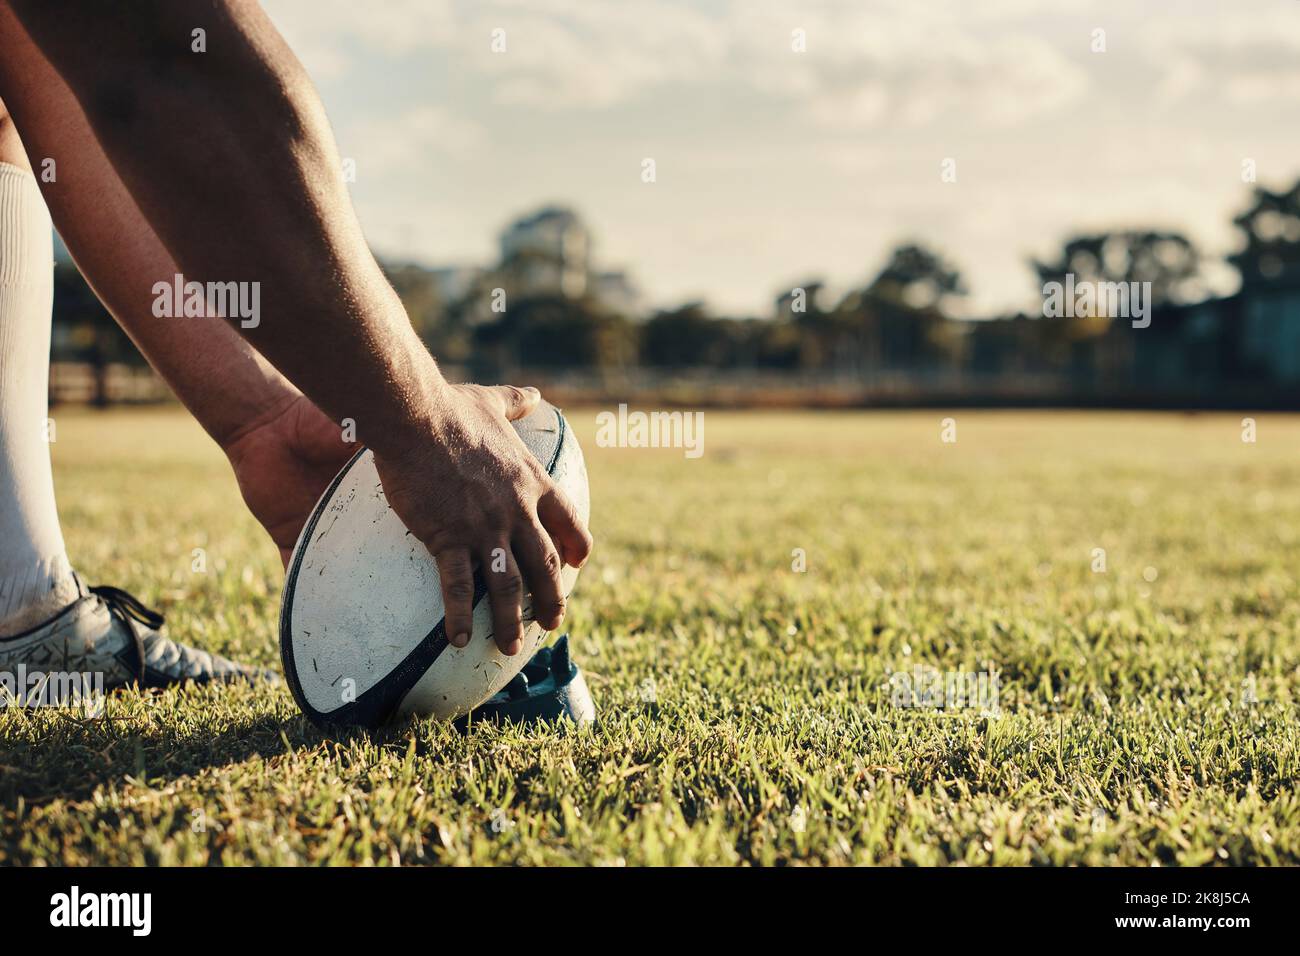 Inizia l'allenamento di calcio: Un giocatore di rugby irriconoscibile che si prepara a calciare sul campo durante il giorno. Foto Stock